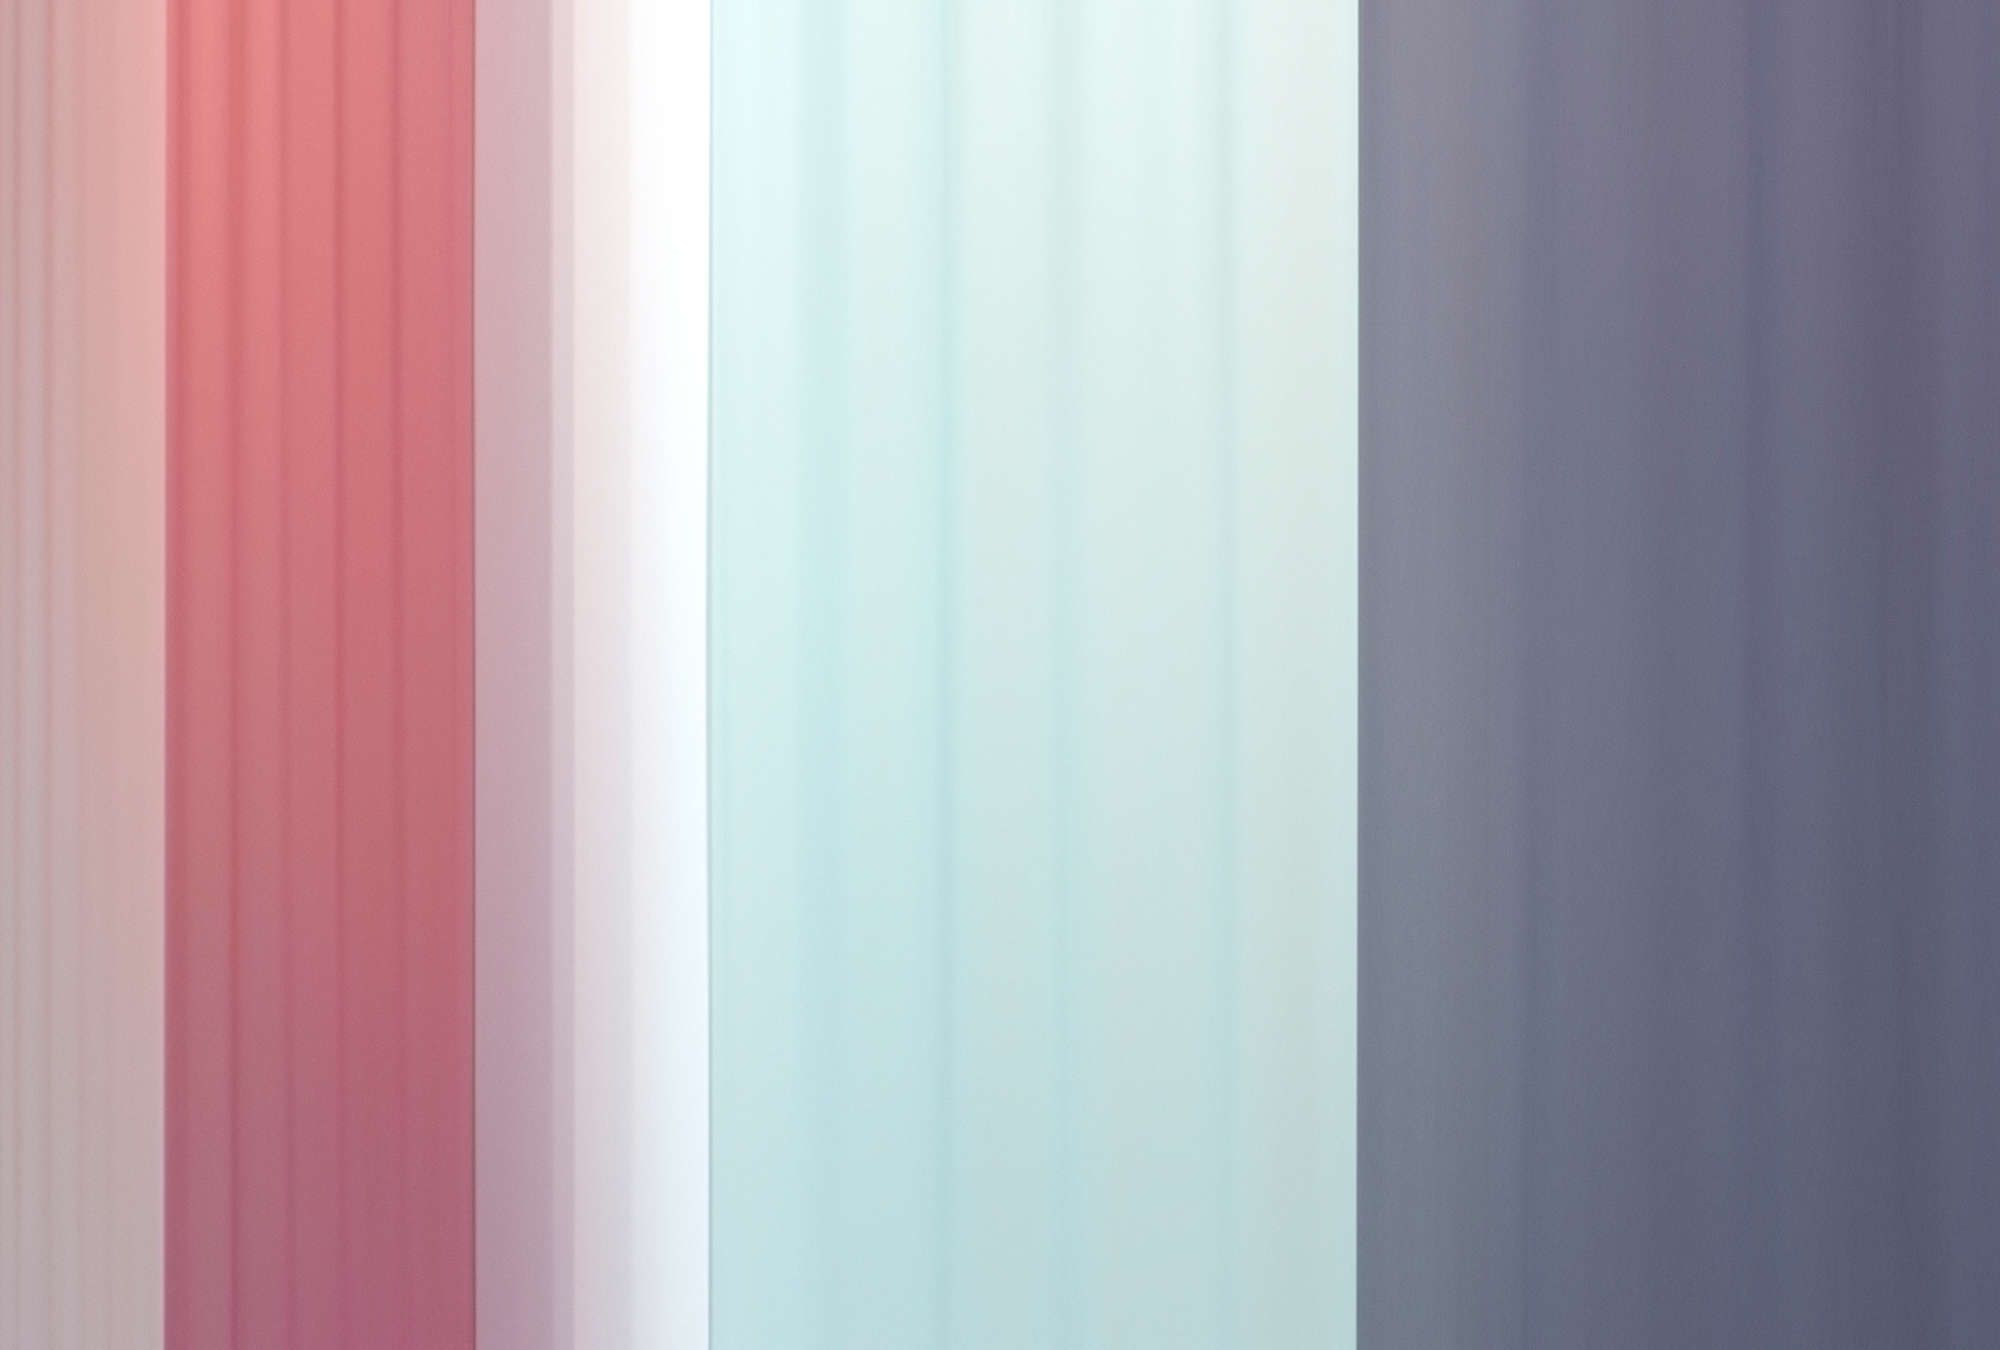             Fototapete »co-colores 2« - Farbverlauf mit Streifen – Pink, Hellblau Dunkelblau | Glattes, leicht glänzendes Premiumvlies
        